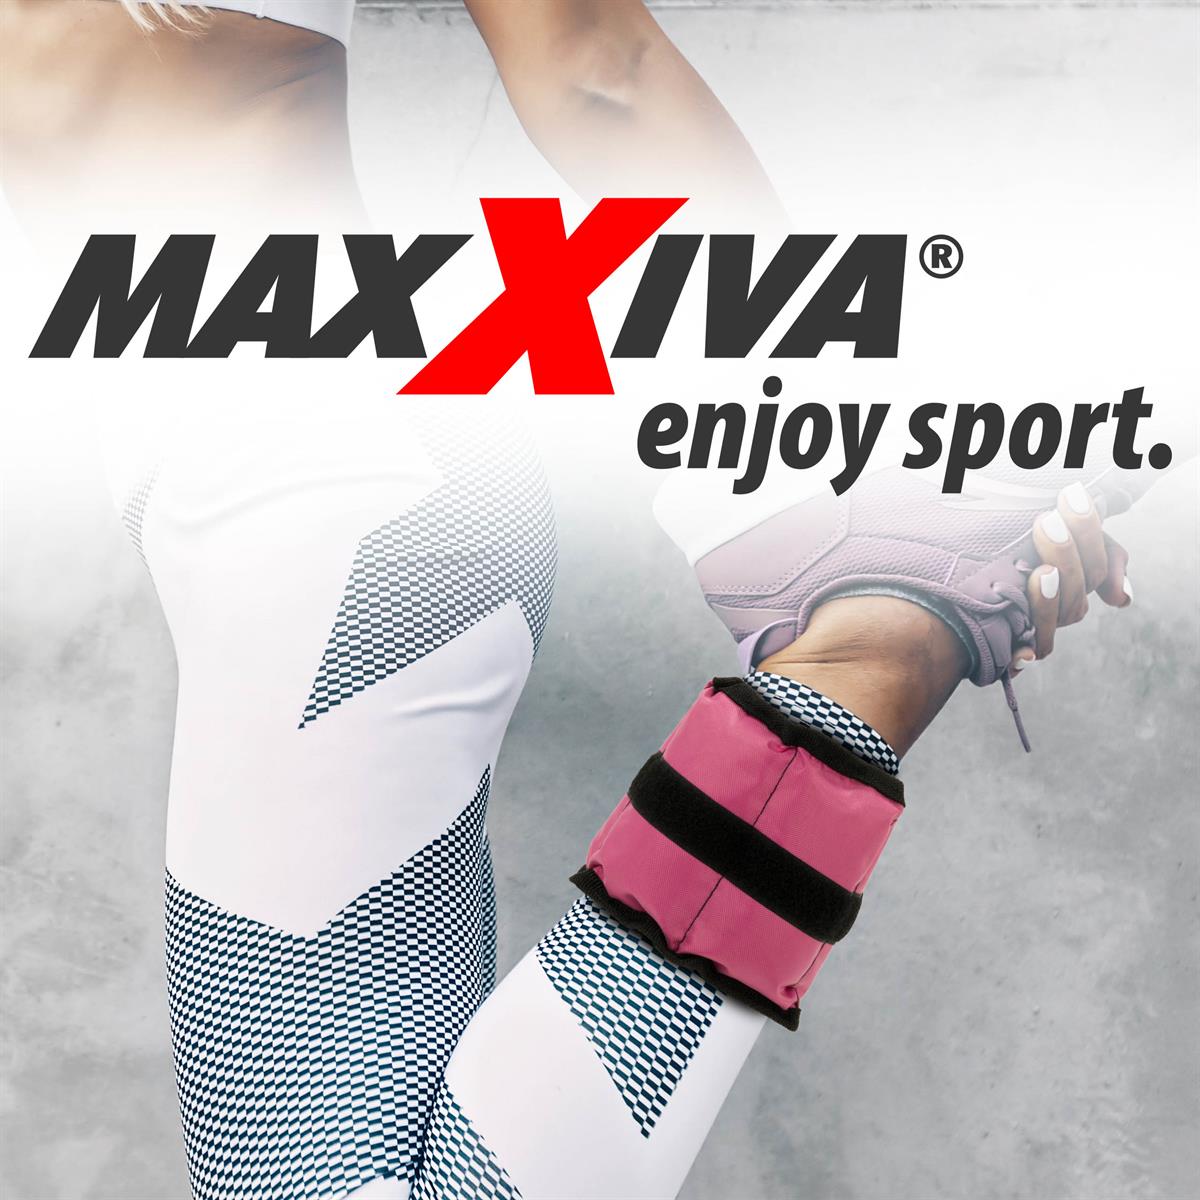 MAXXIVA Gewichtsmannschetten Set 2 x 1 kg Laufgewichte Pink Arm Bein Eisensand 